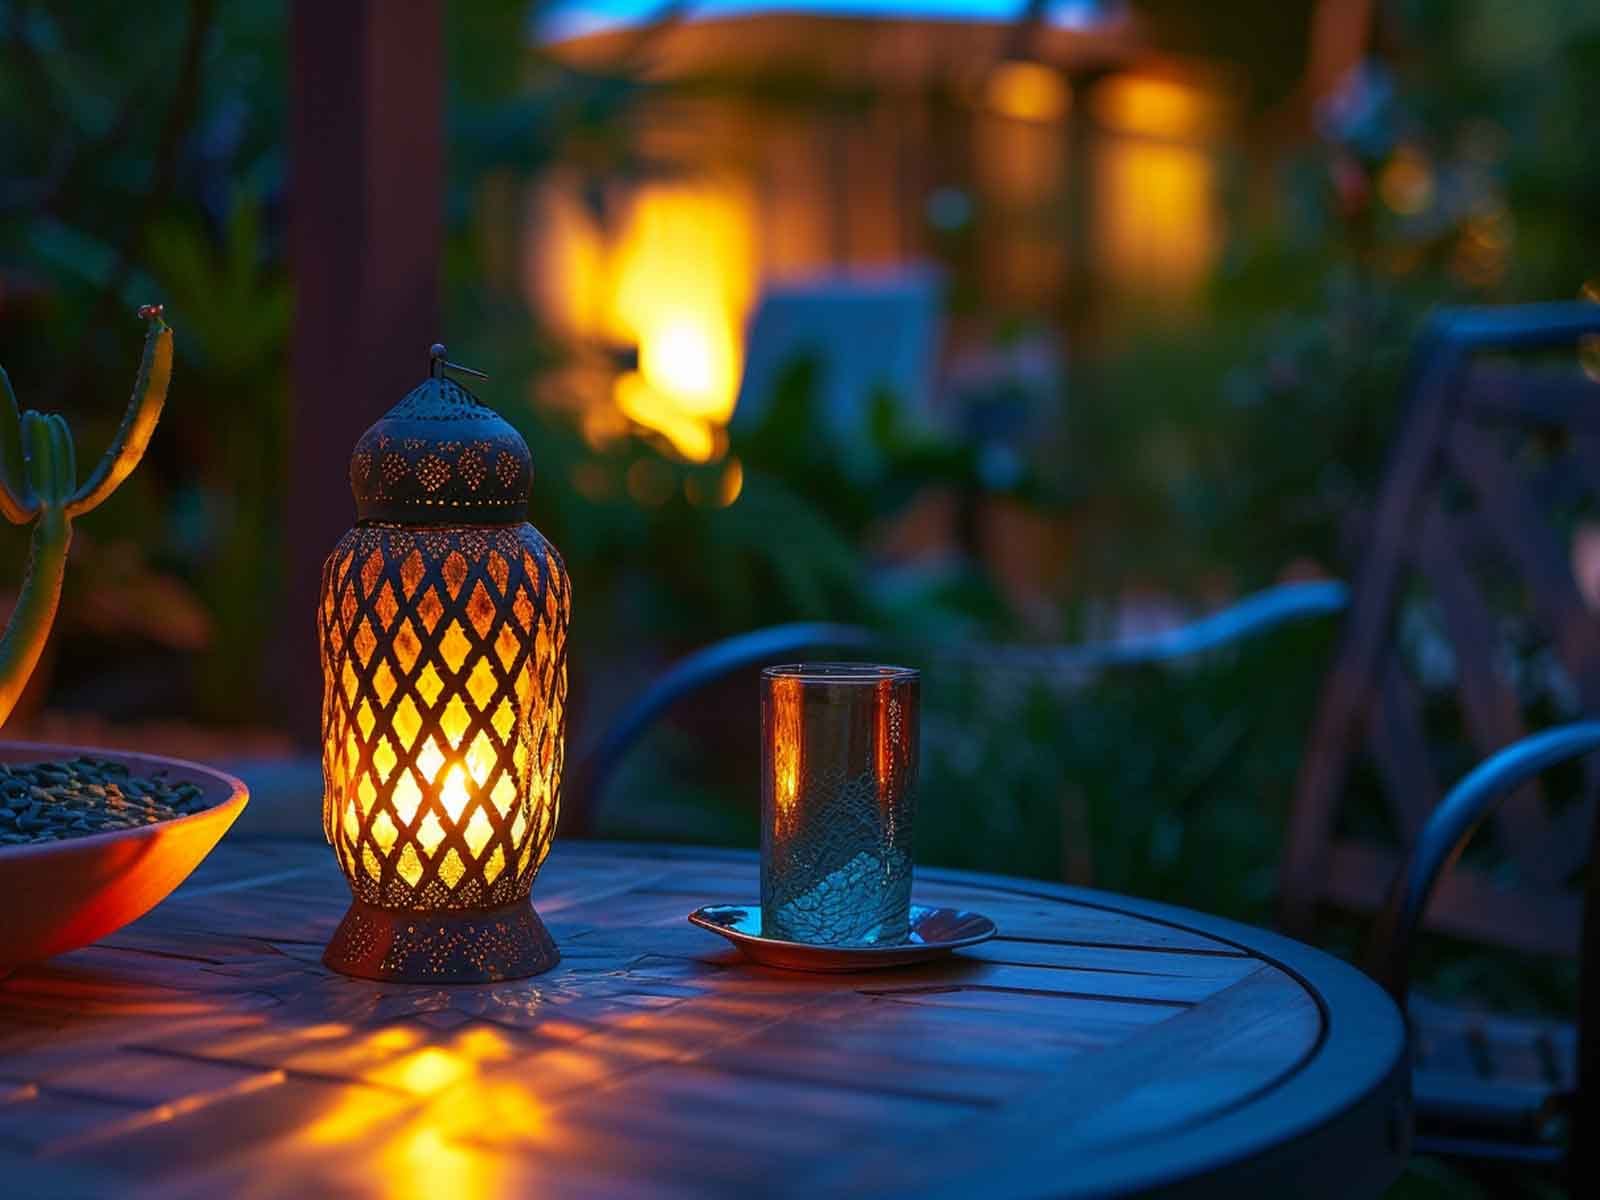 A portable Moroccan lantern decorating a garden table